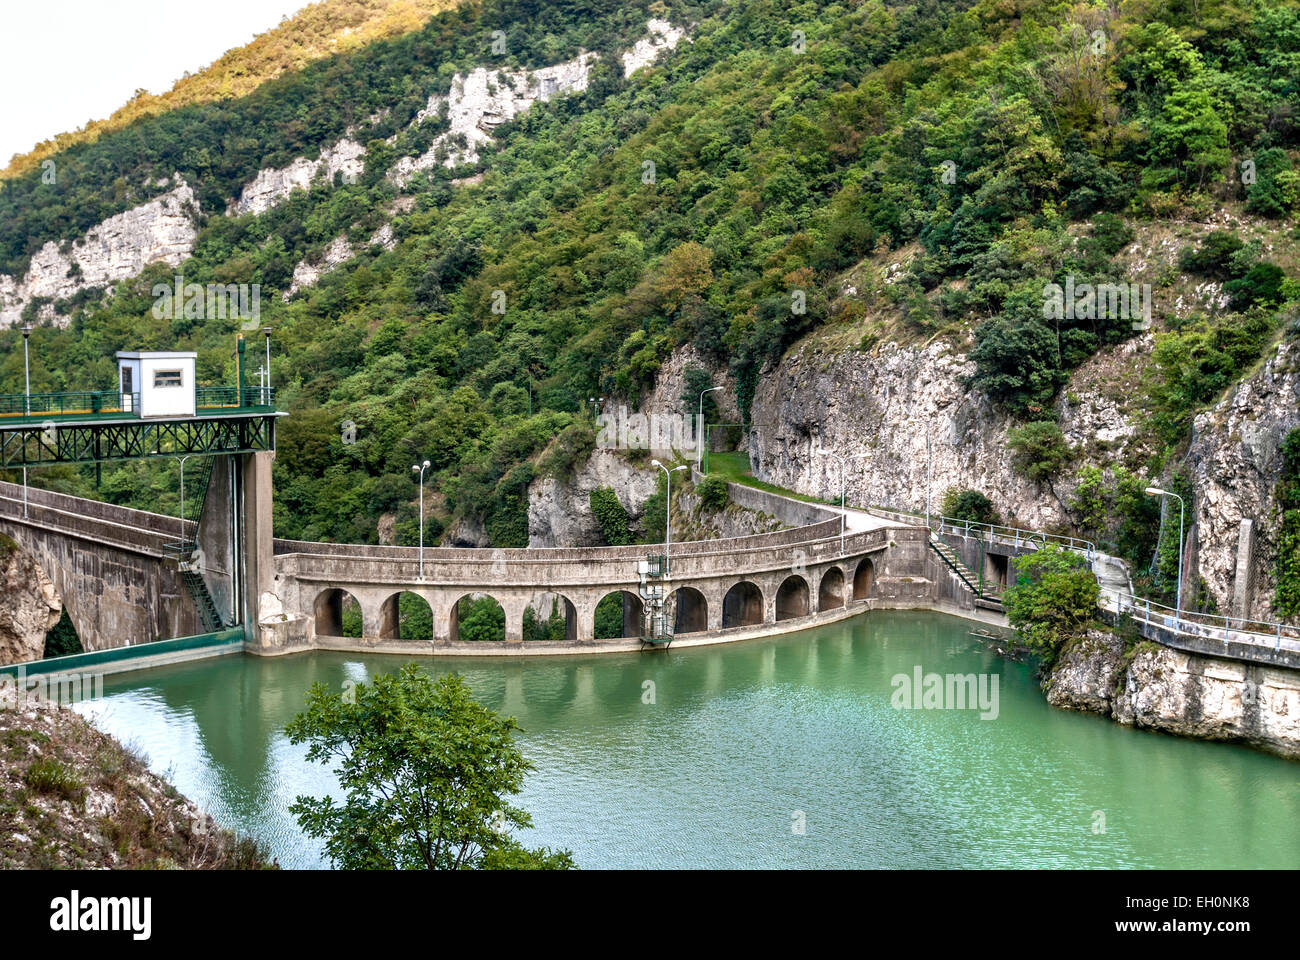 Dam at the Furlo Gorge in Acqualagna, Marche, Italy.| Staudamm am Furlo Gorge in Acqualagna in der Marche, Italien. Stock Photo